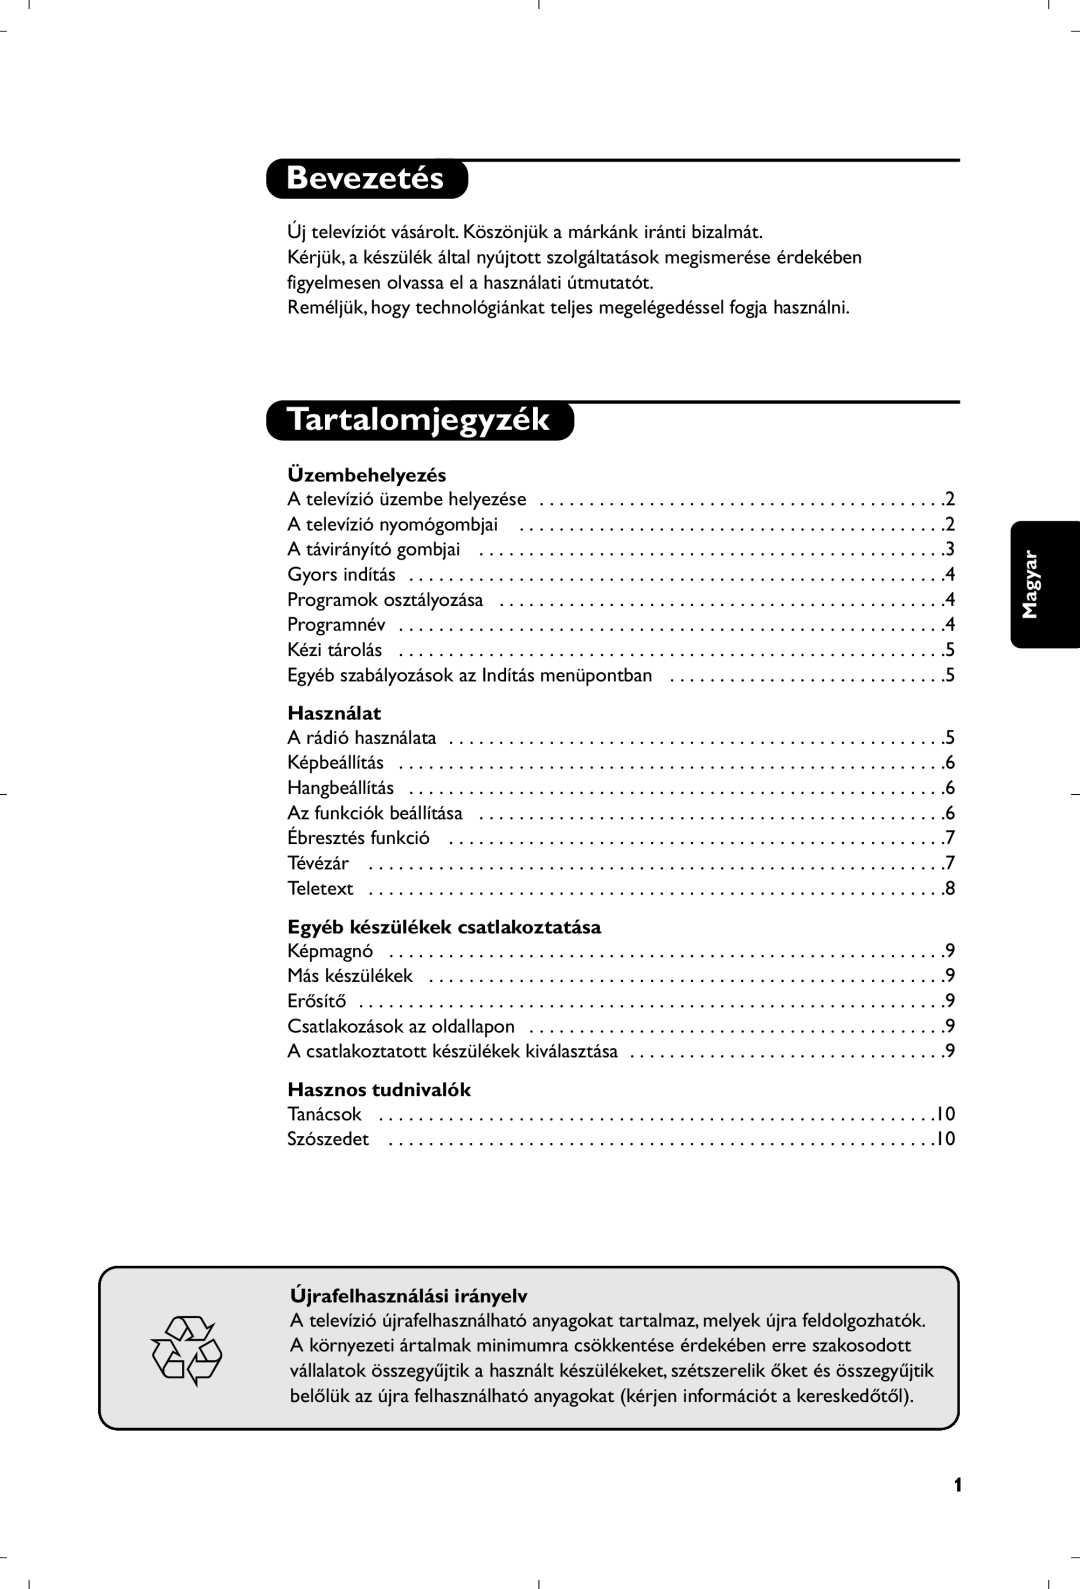 Philips 21PT4457/58 manual Bevezetés, Tartalomjegyzék, Üzembehelyezés, Használat, Egyéb készülékek csatlakoztatása, Magyar 